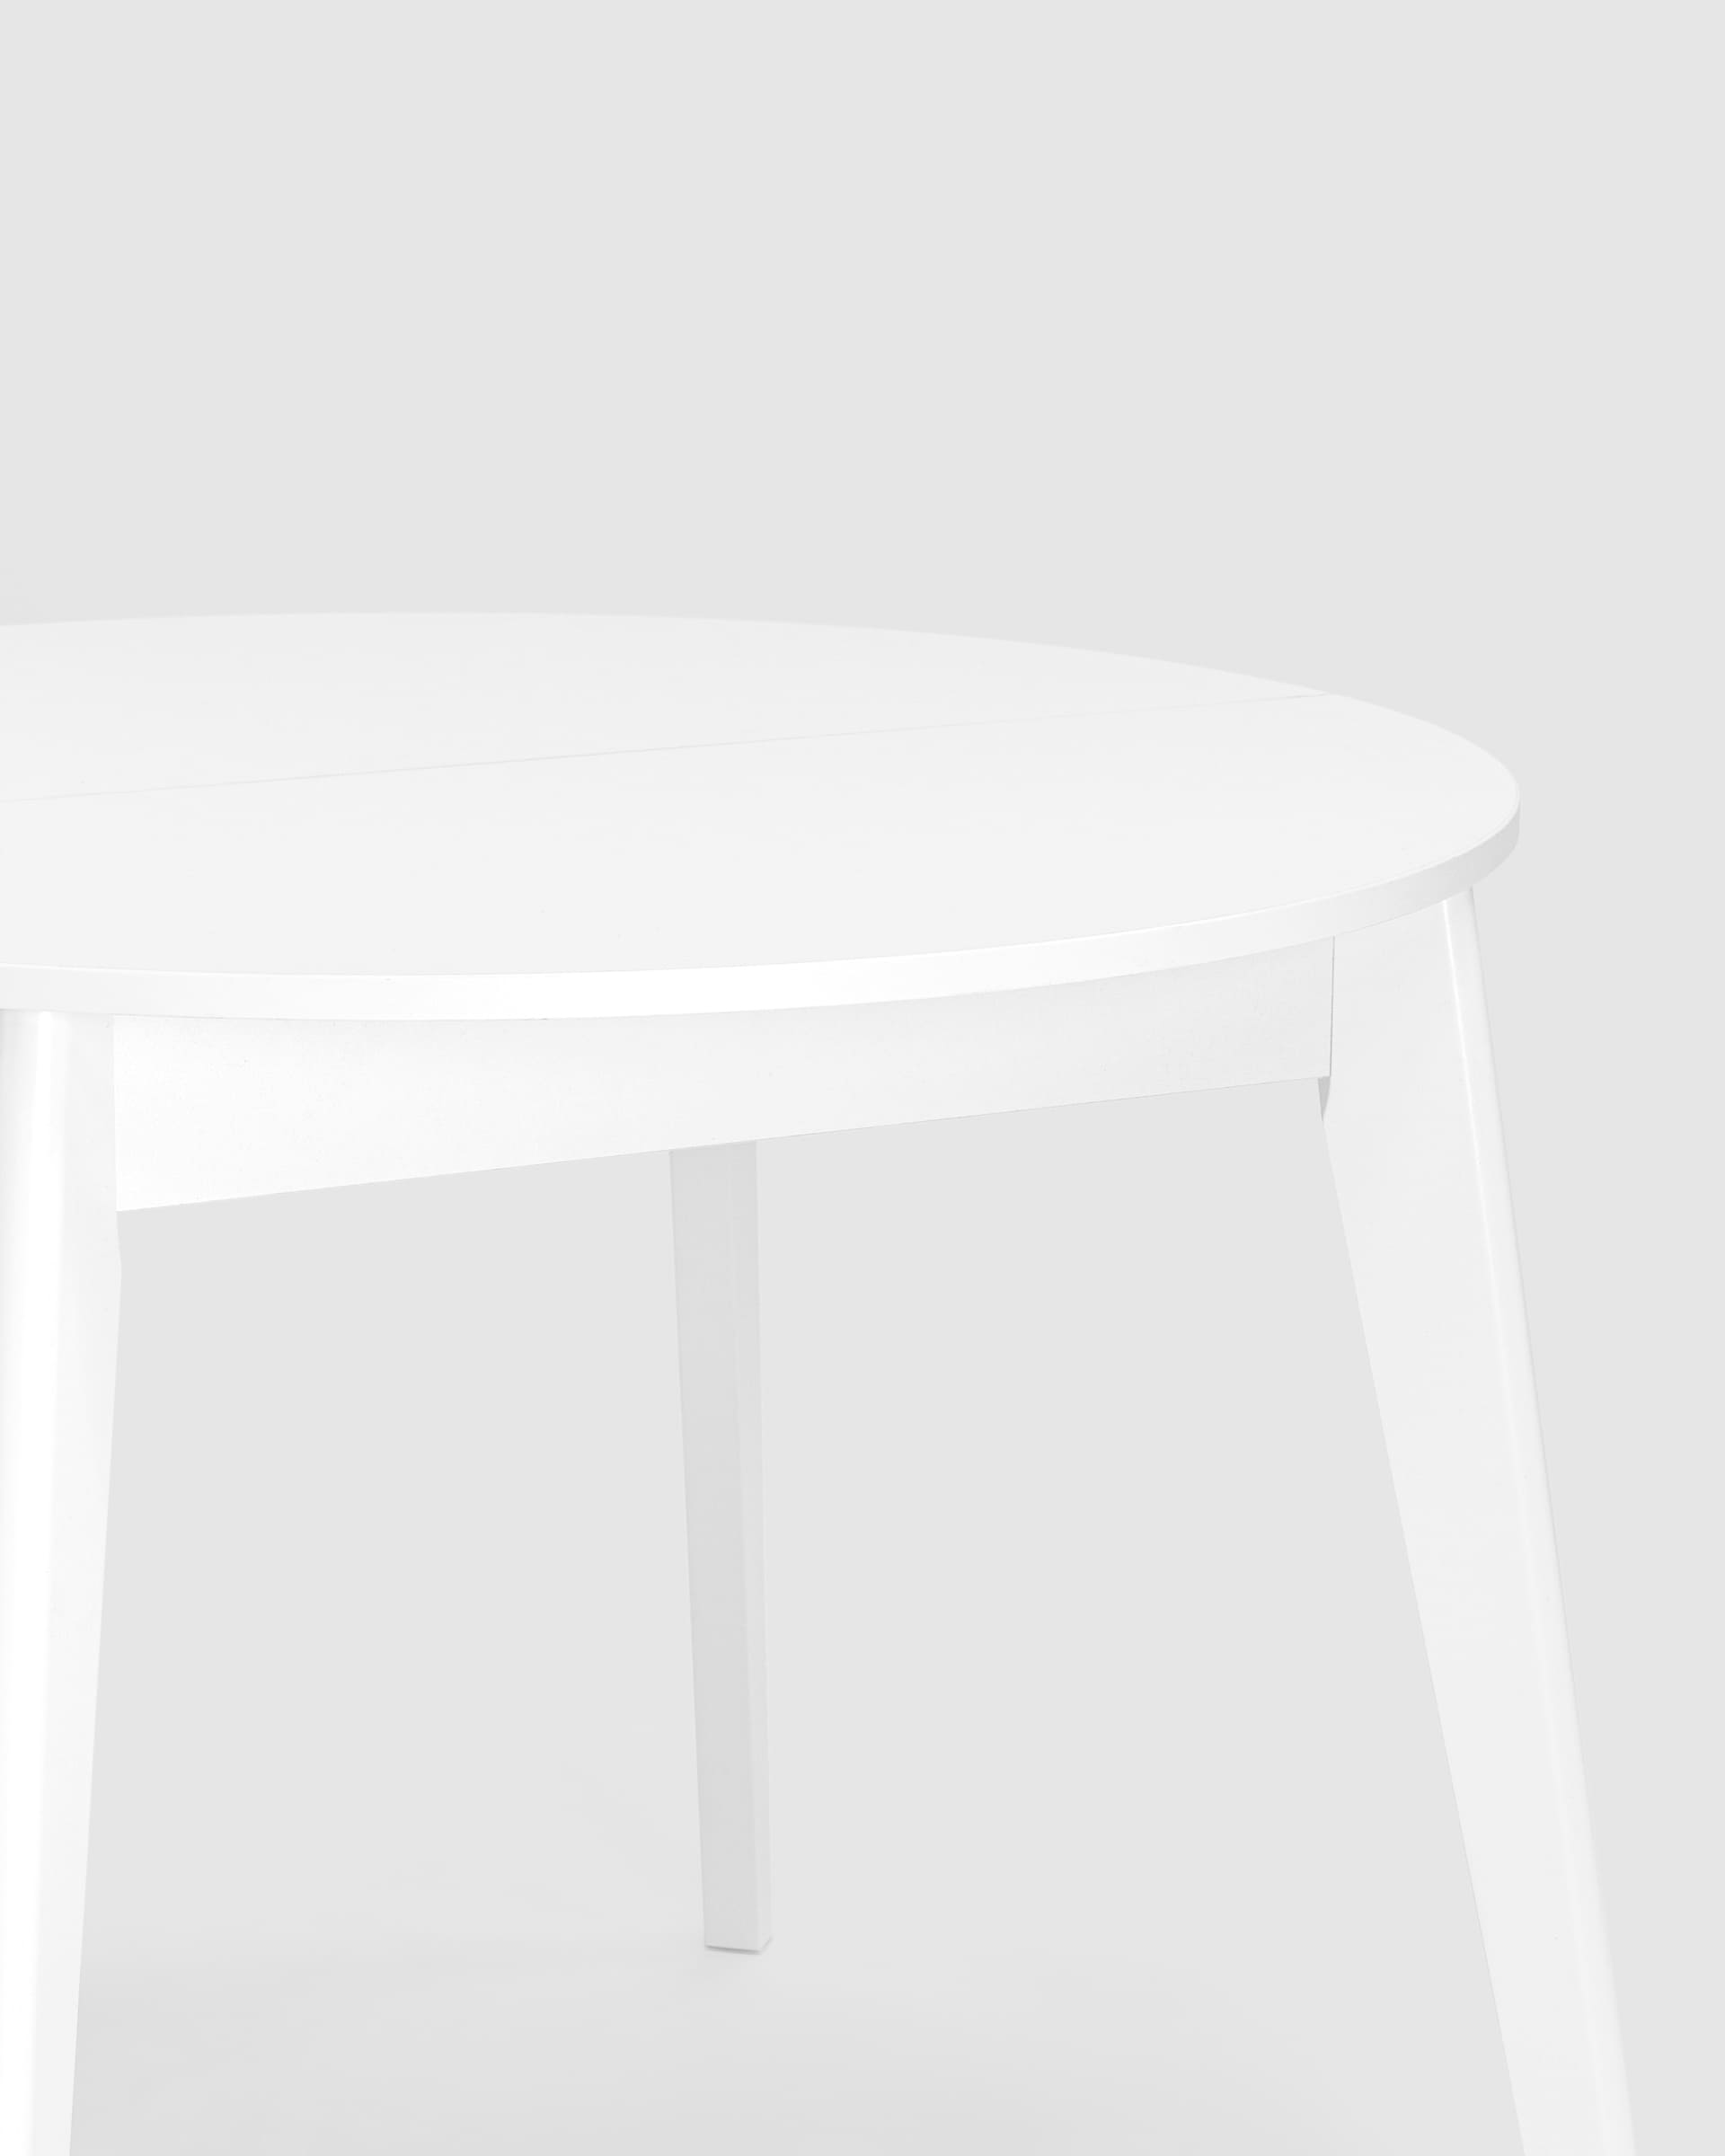 Стол Rondo диаметр 100 см белый, раскладывается до 135 см